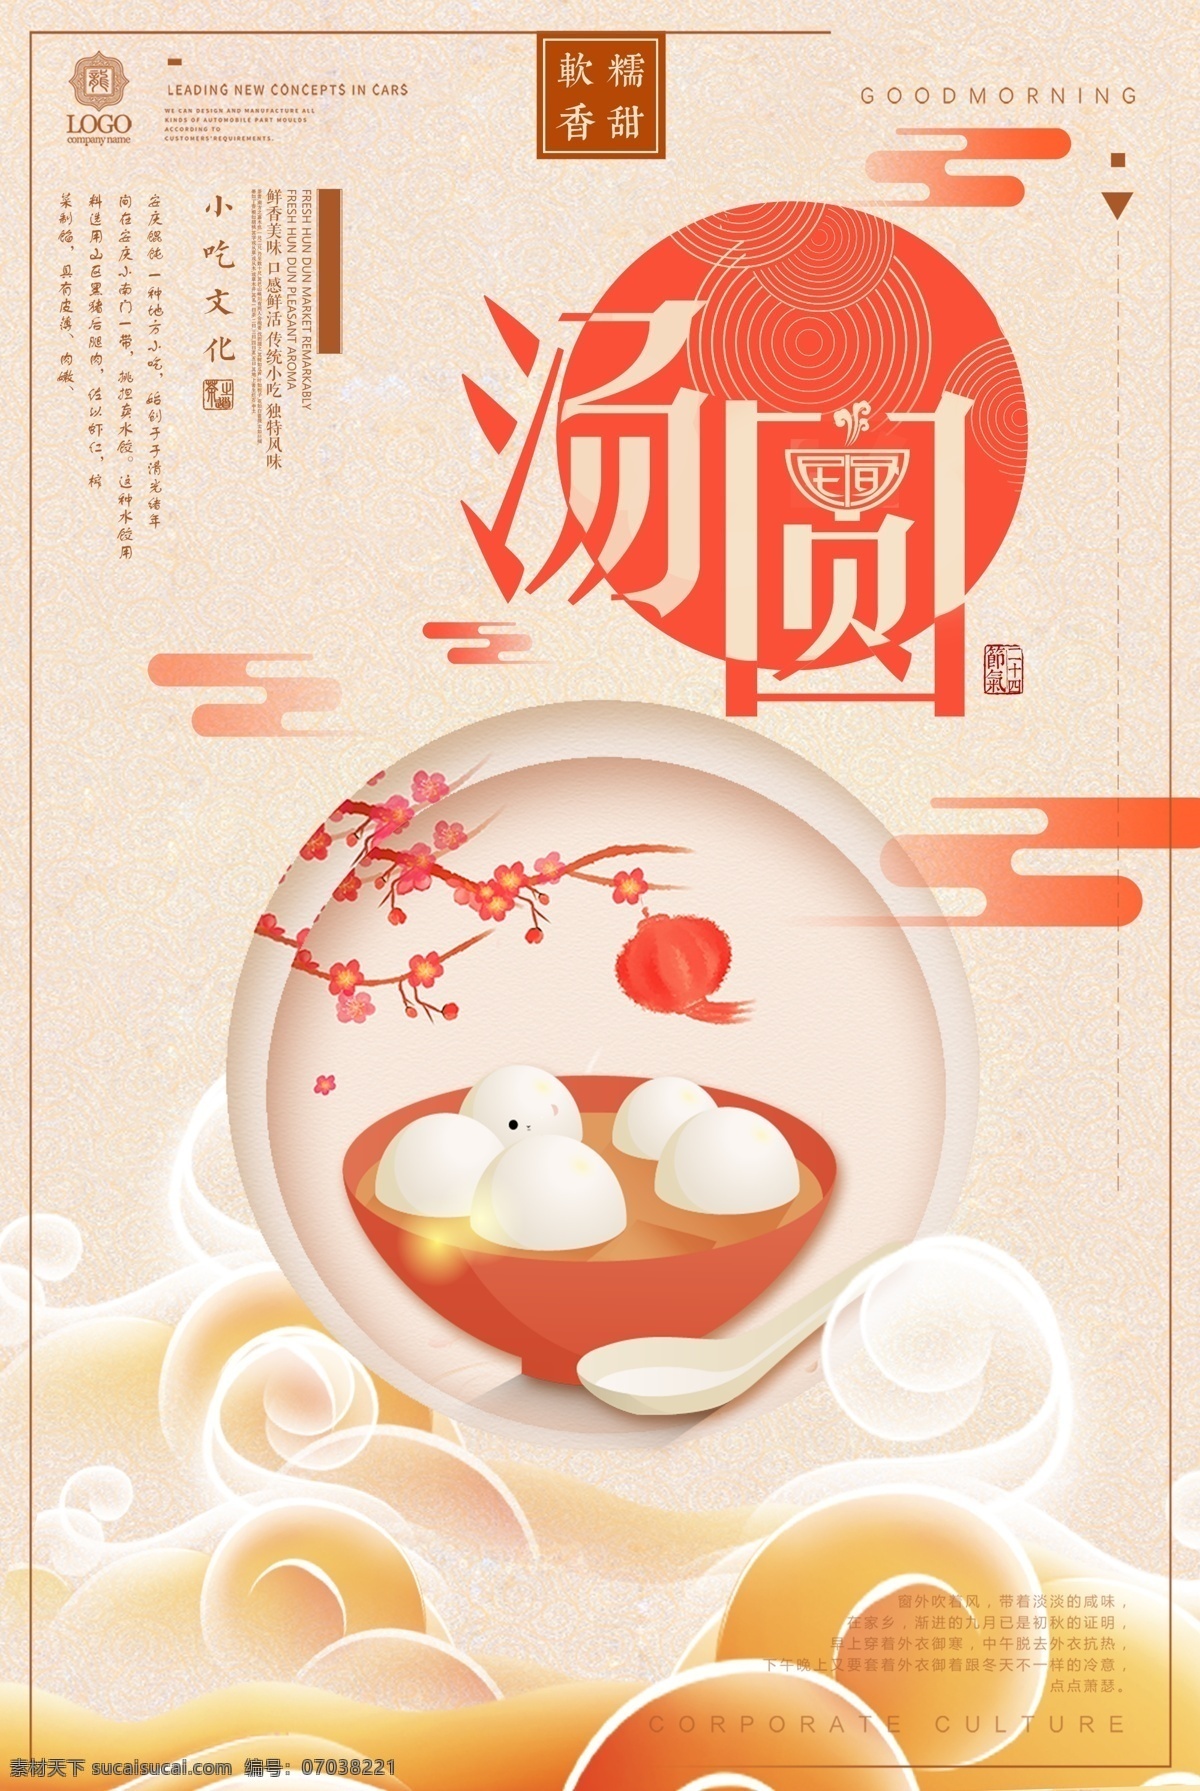 中国 风 汤圆 可爱汤圆 元宵节 元宵 吃汤圆 经典传统 美味汤圆 节日美食 中国传统节日 展板模板